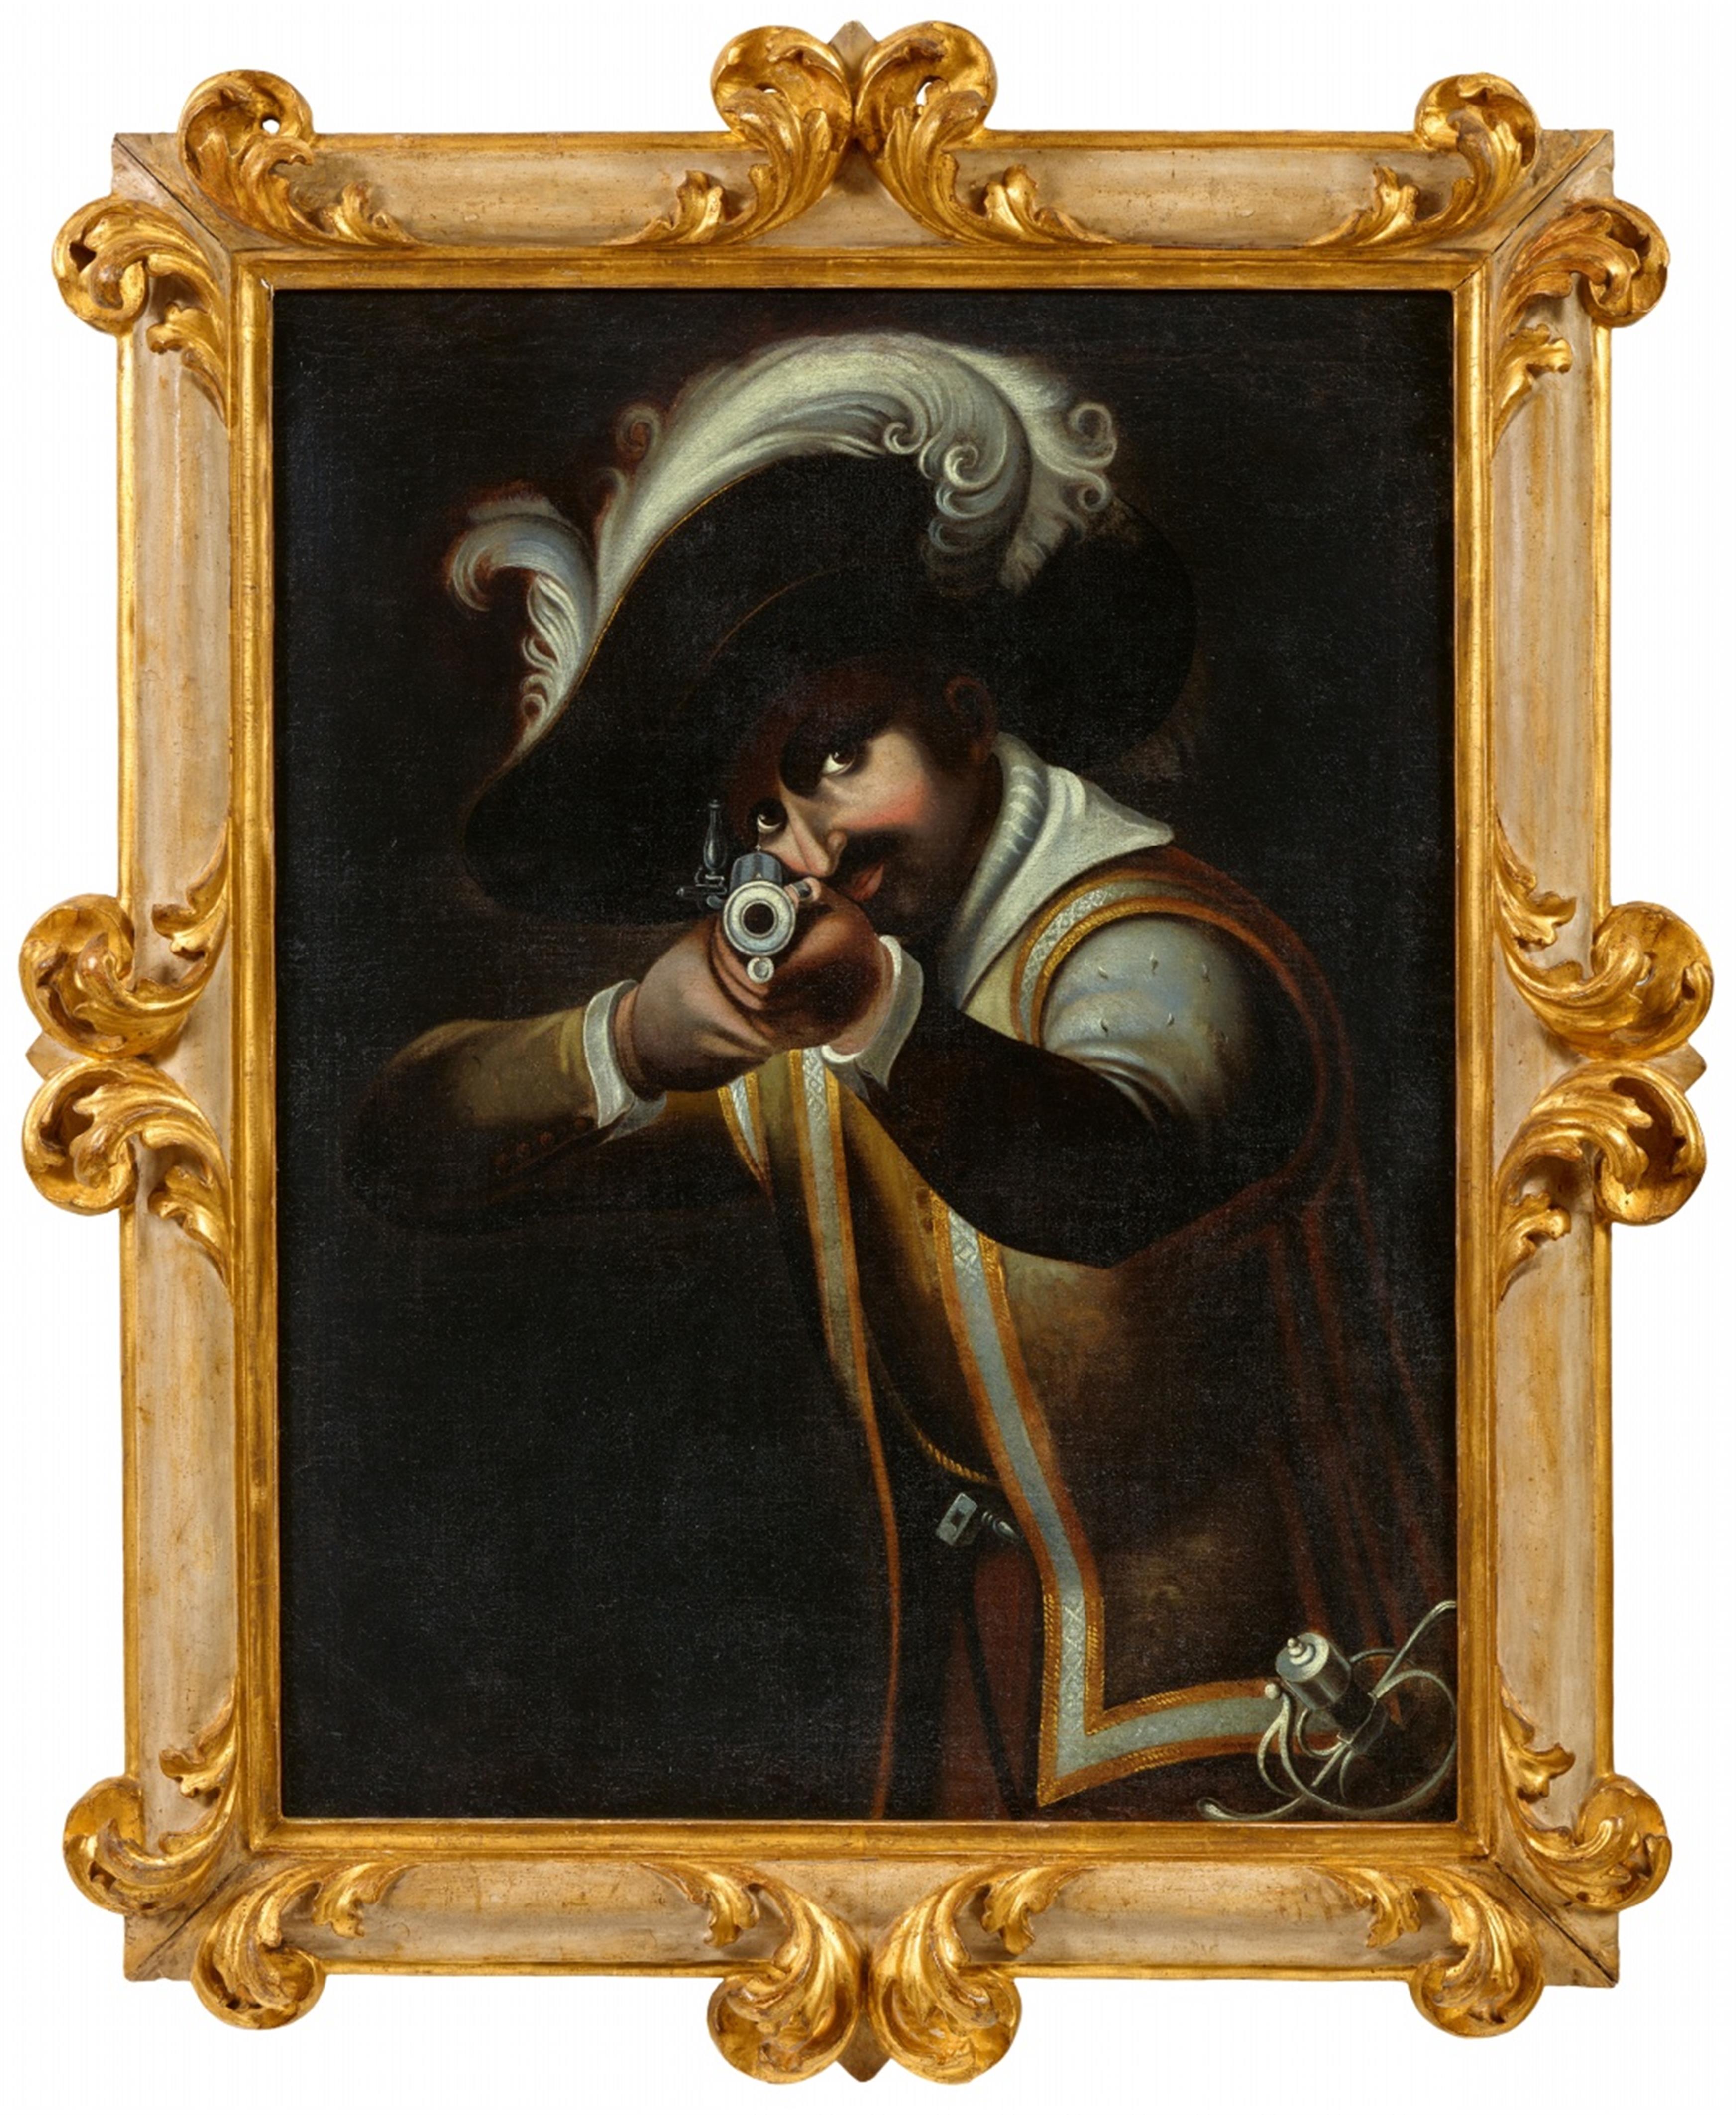 Florentine School 17th century - Mann Aiming a Gun - image-1